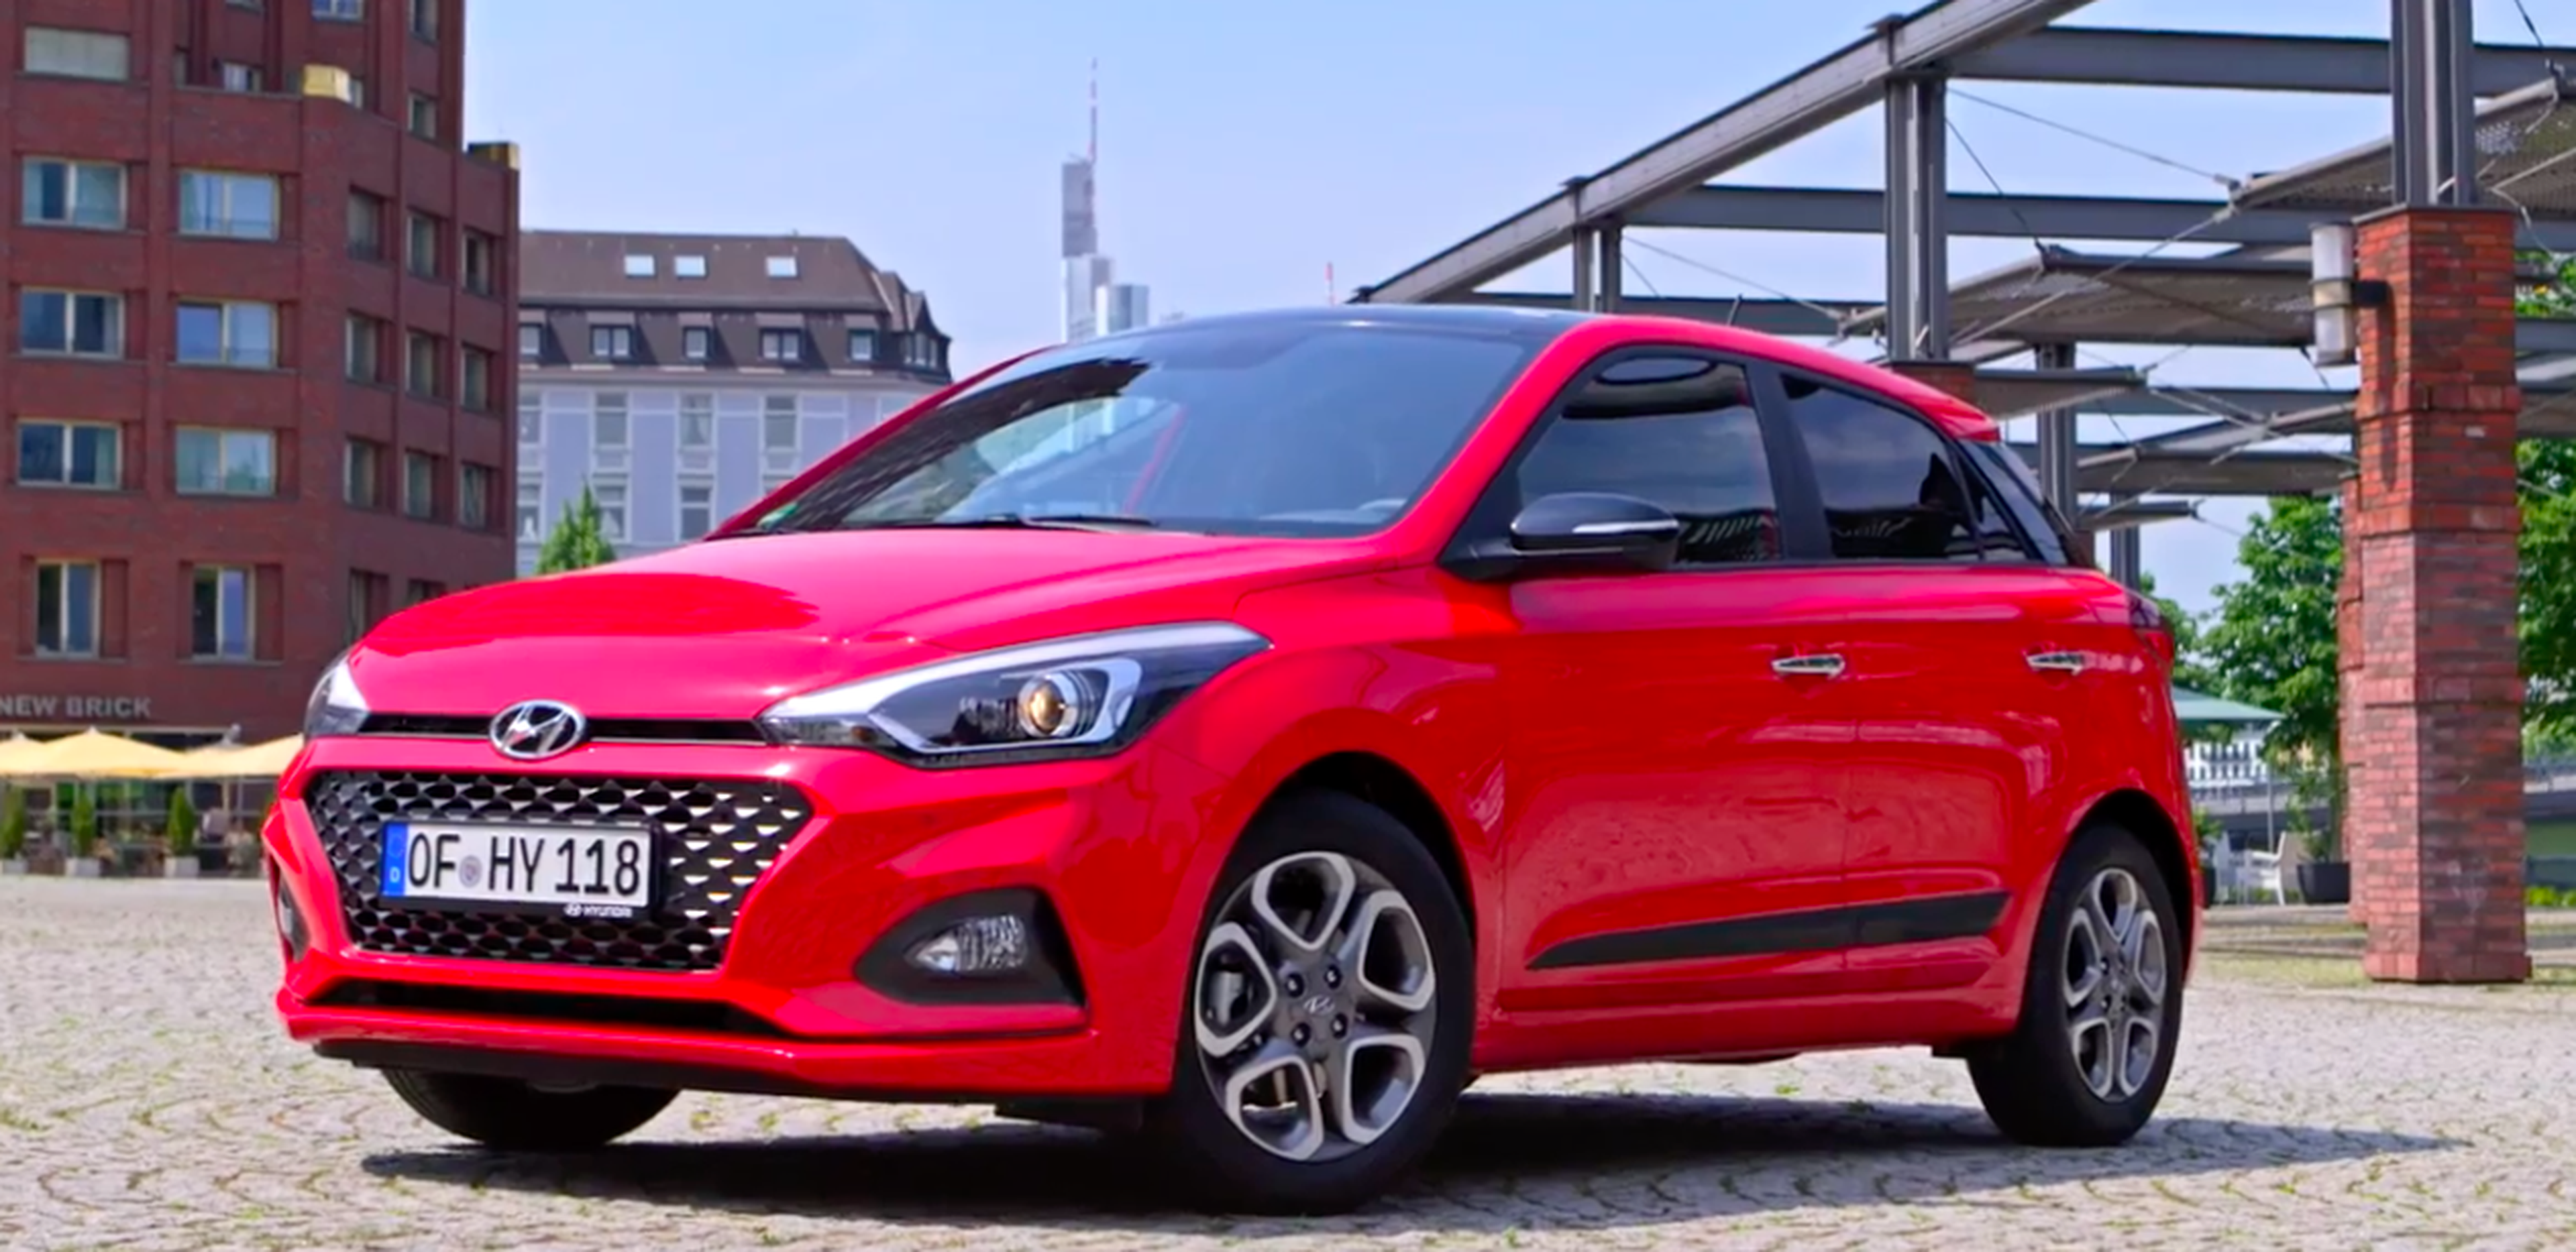 VÍDEO: Hyundai i20, renovado y cargado de tecnología